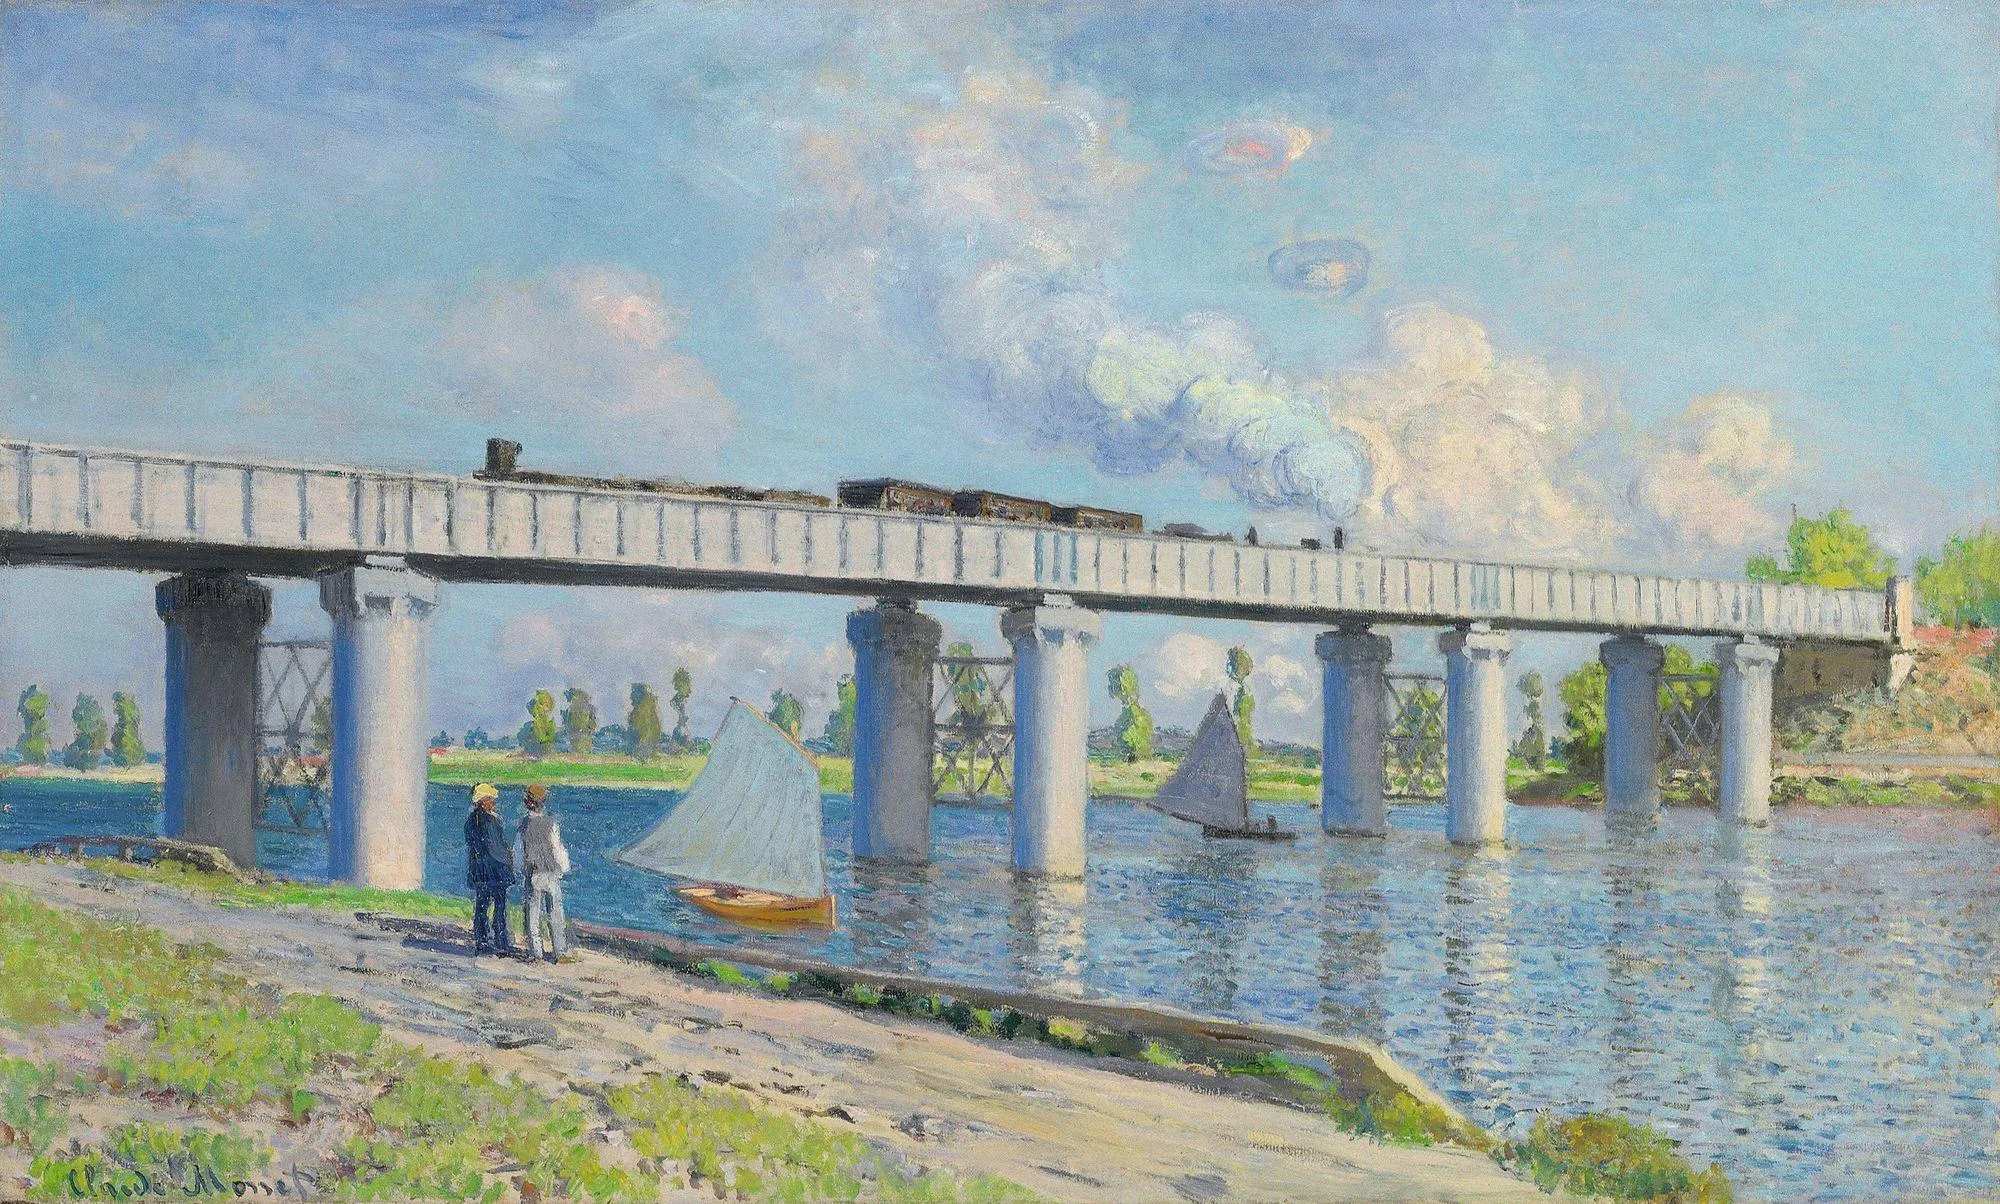 Claude Monet, Le Pont de chemin de fer à Argenteuil, 1873, huile sur toile,
60 x 99 cm, collection privée.